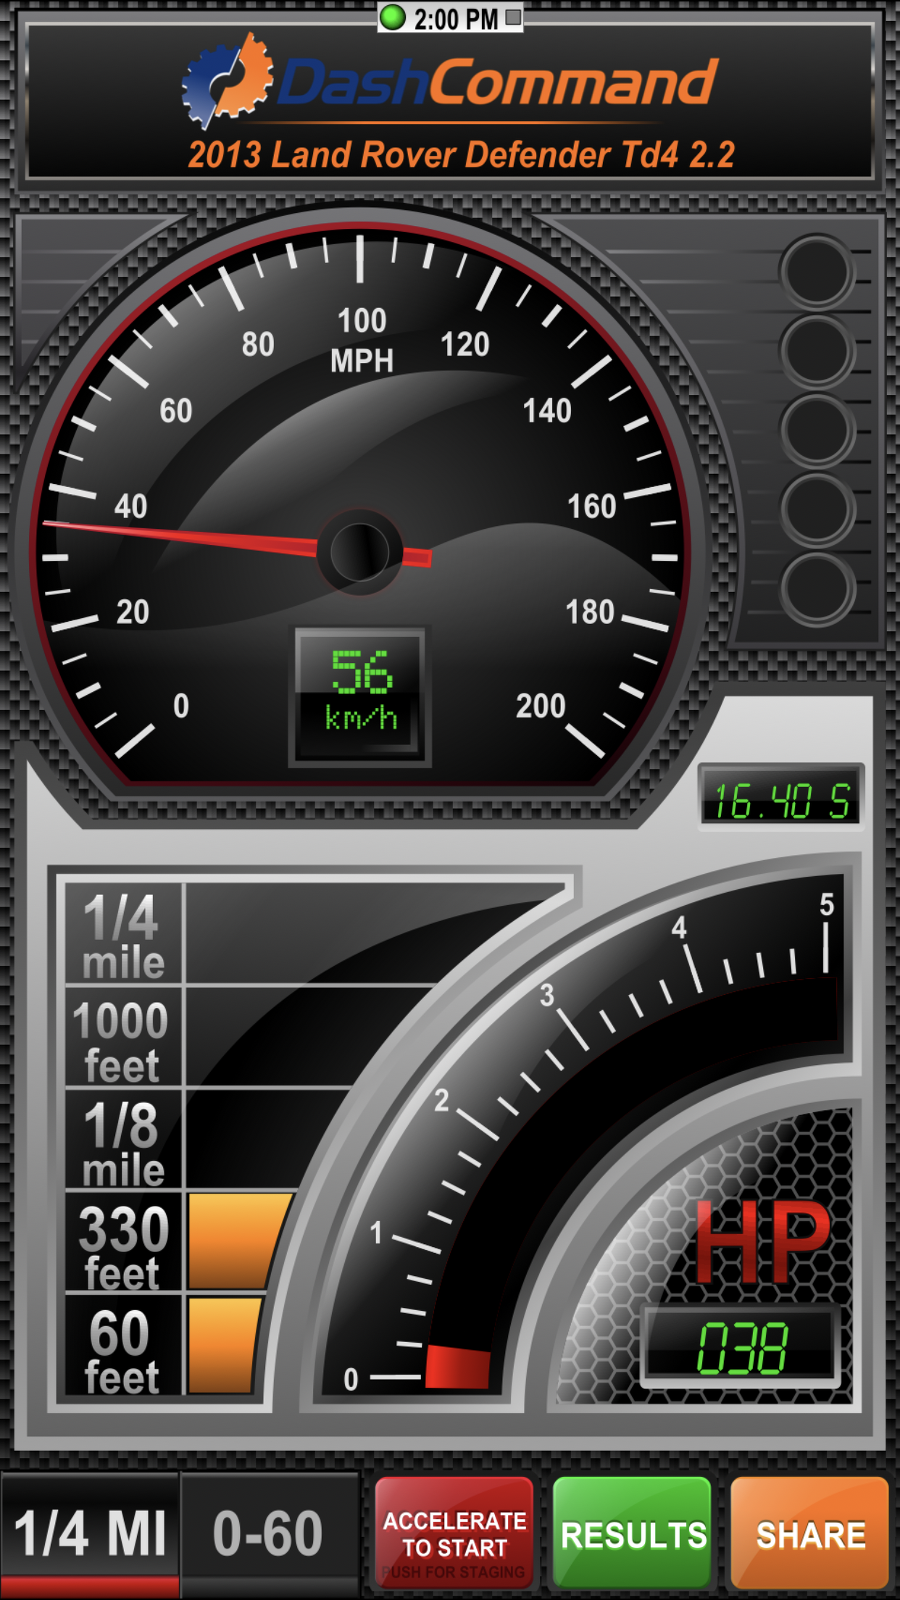 Vgate iCar 3 WiFi OBD-Schnittstelle - Diagnosegerät - Performance-Dashboard für den Renneinsatz.